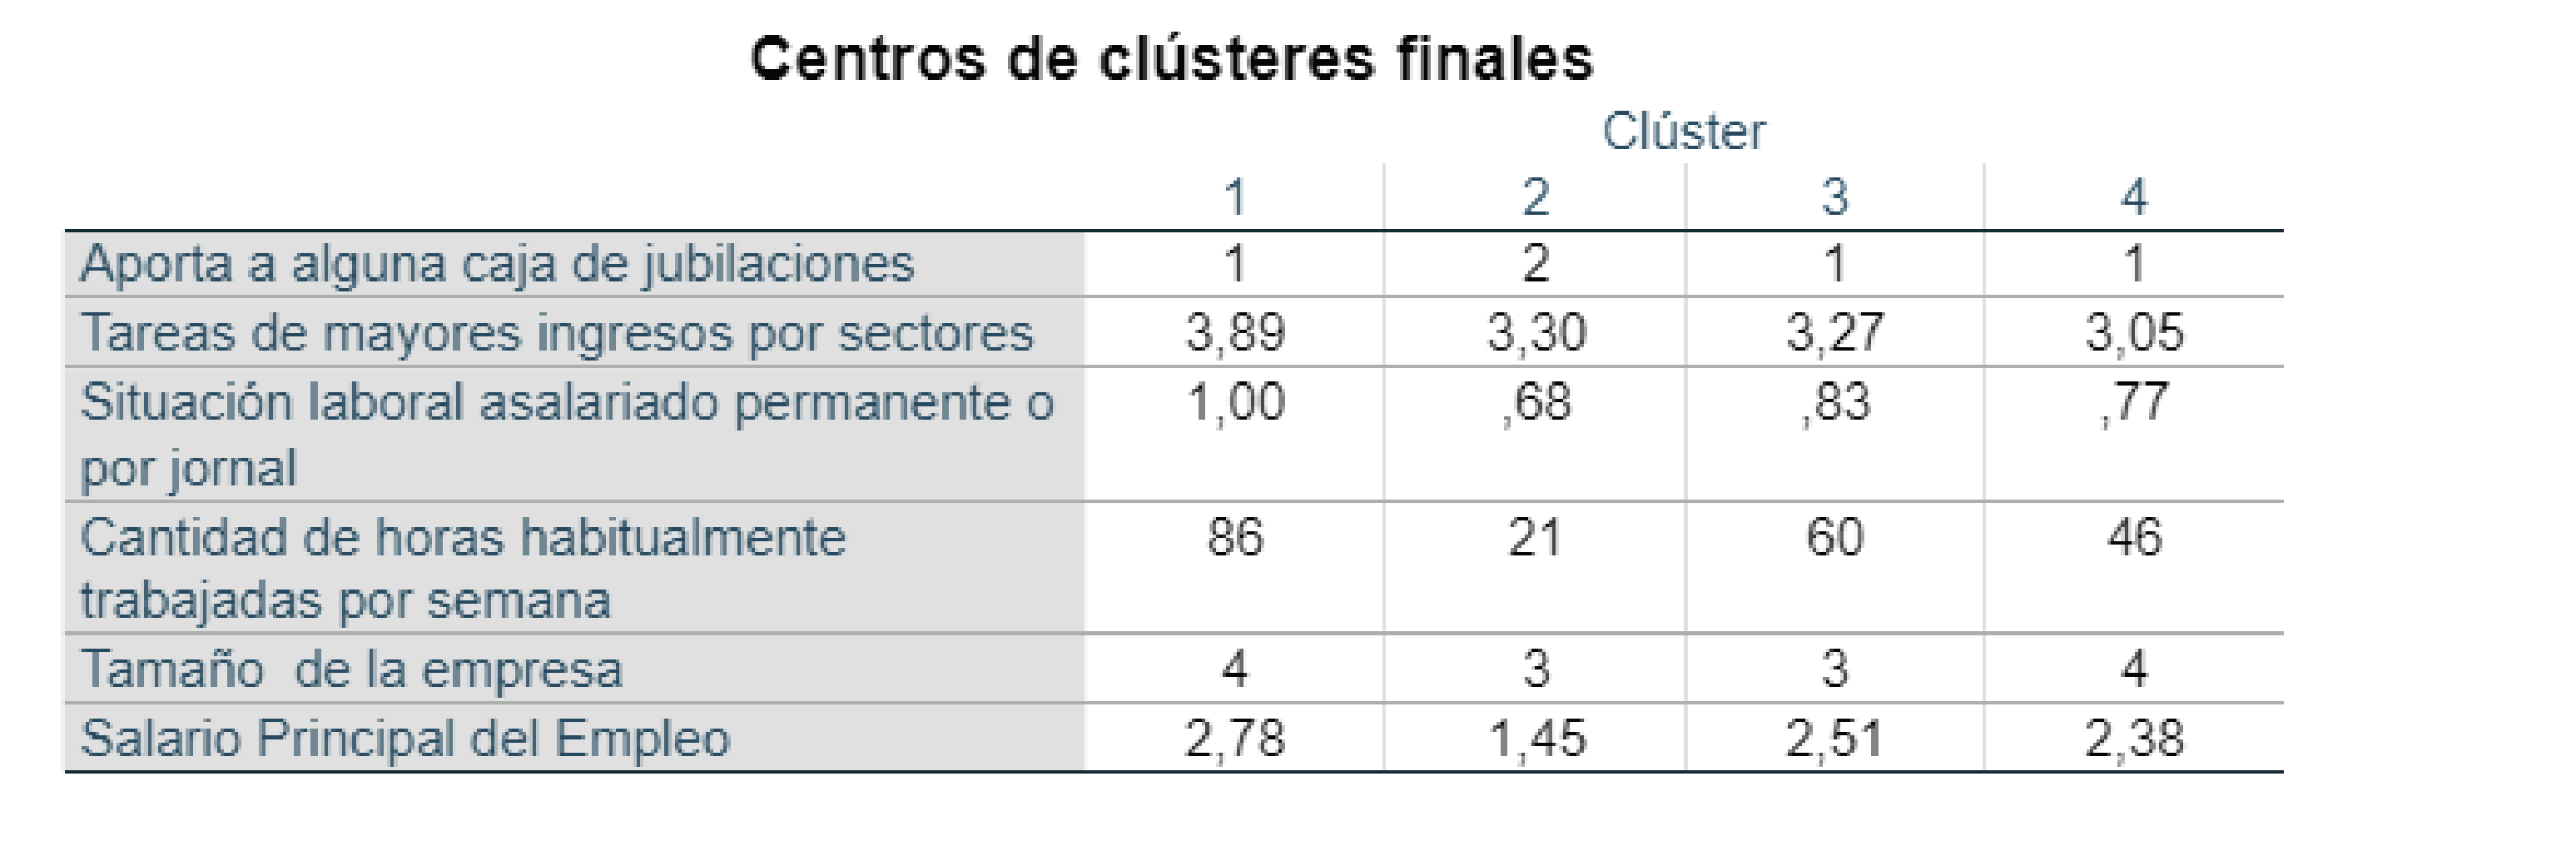 Cluster Final
Asalariados Agrarios 2015.